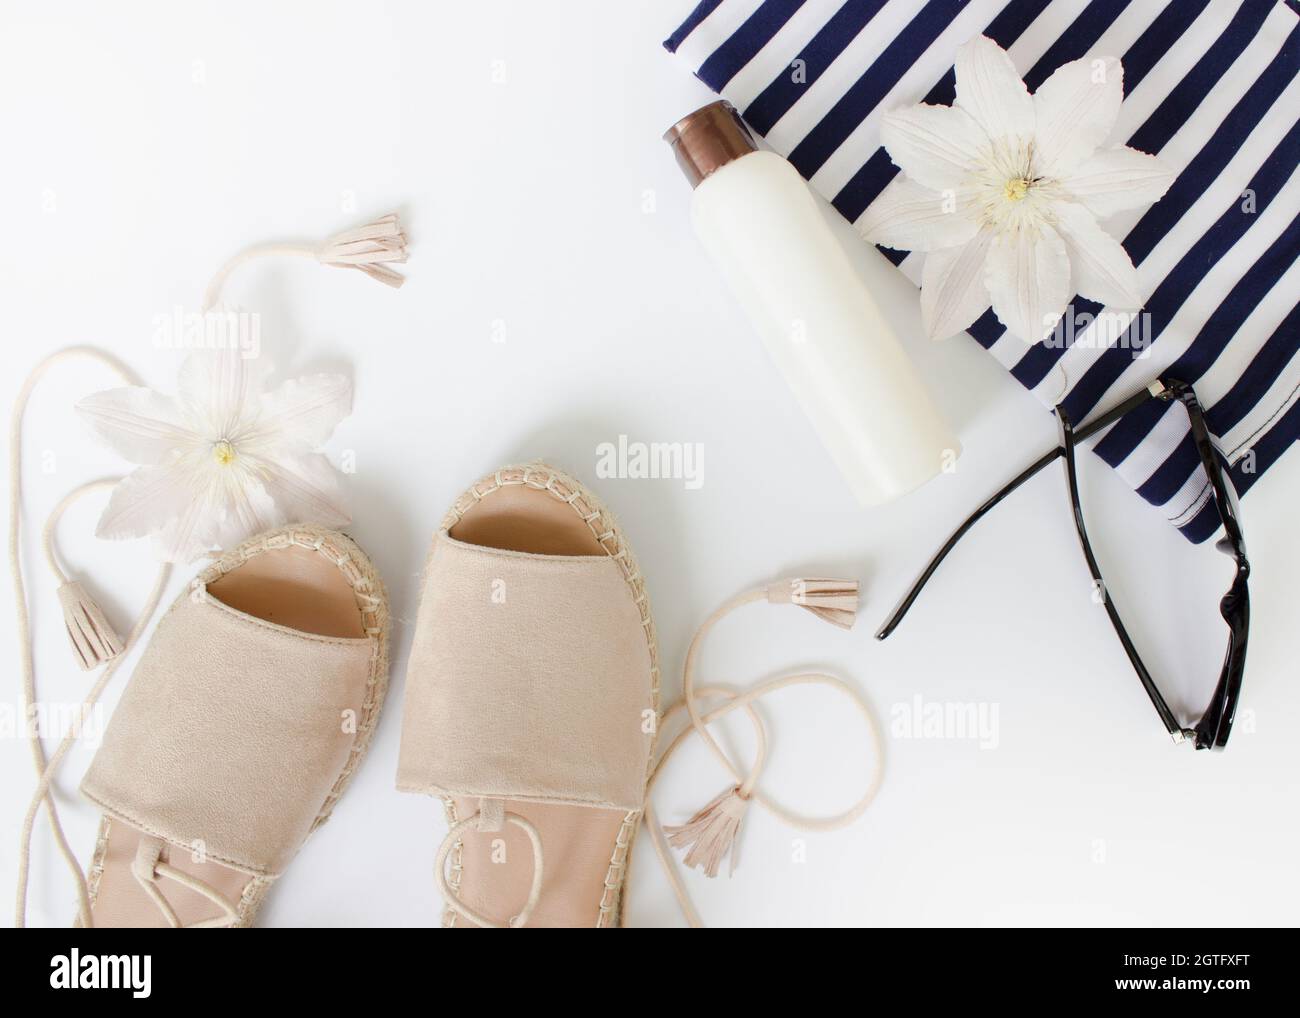 Sommer flach Lay. Sommersandalen, weiße Blumen, Sonnenbrillen und eine weiße Flasche.Draufsicht. Kreativer Hintergrund. Stockfoto